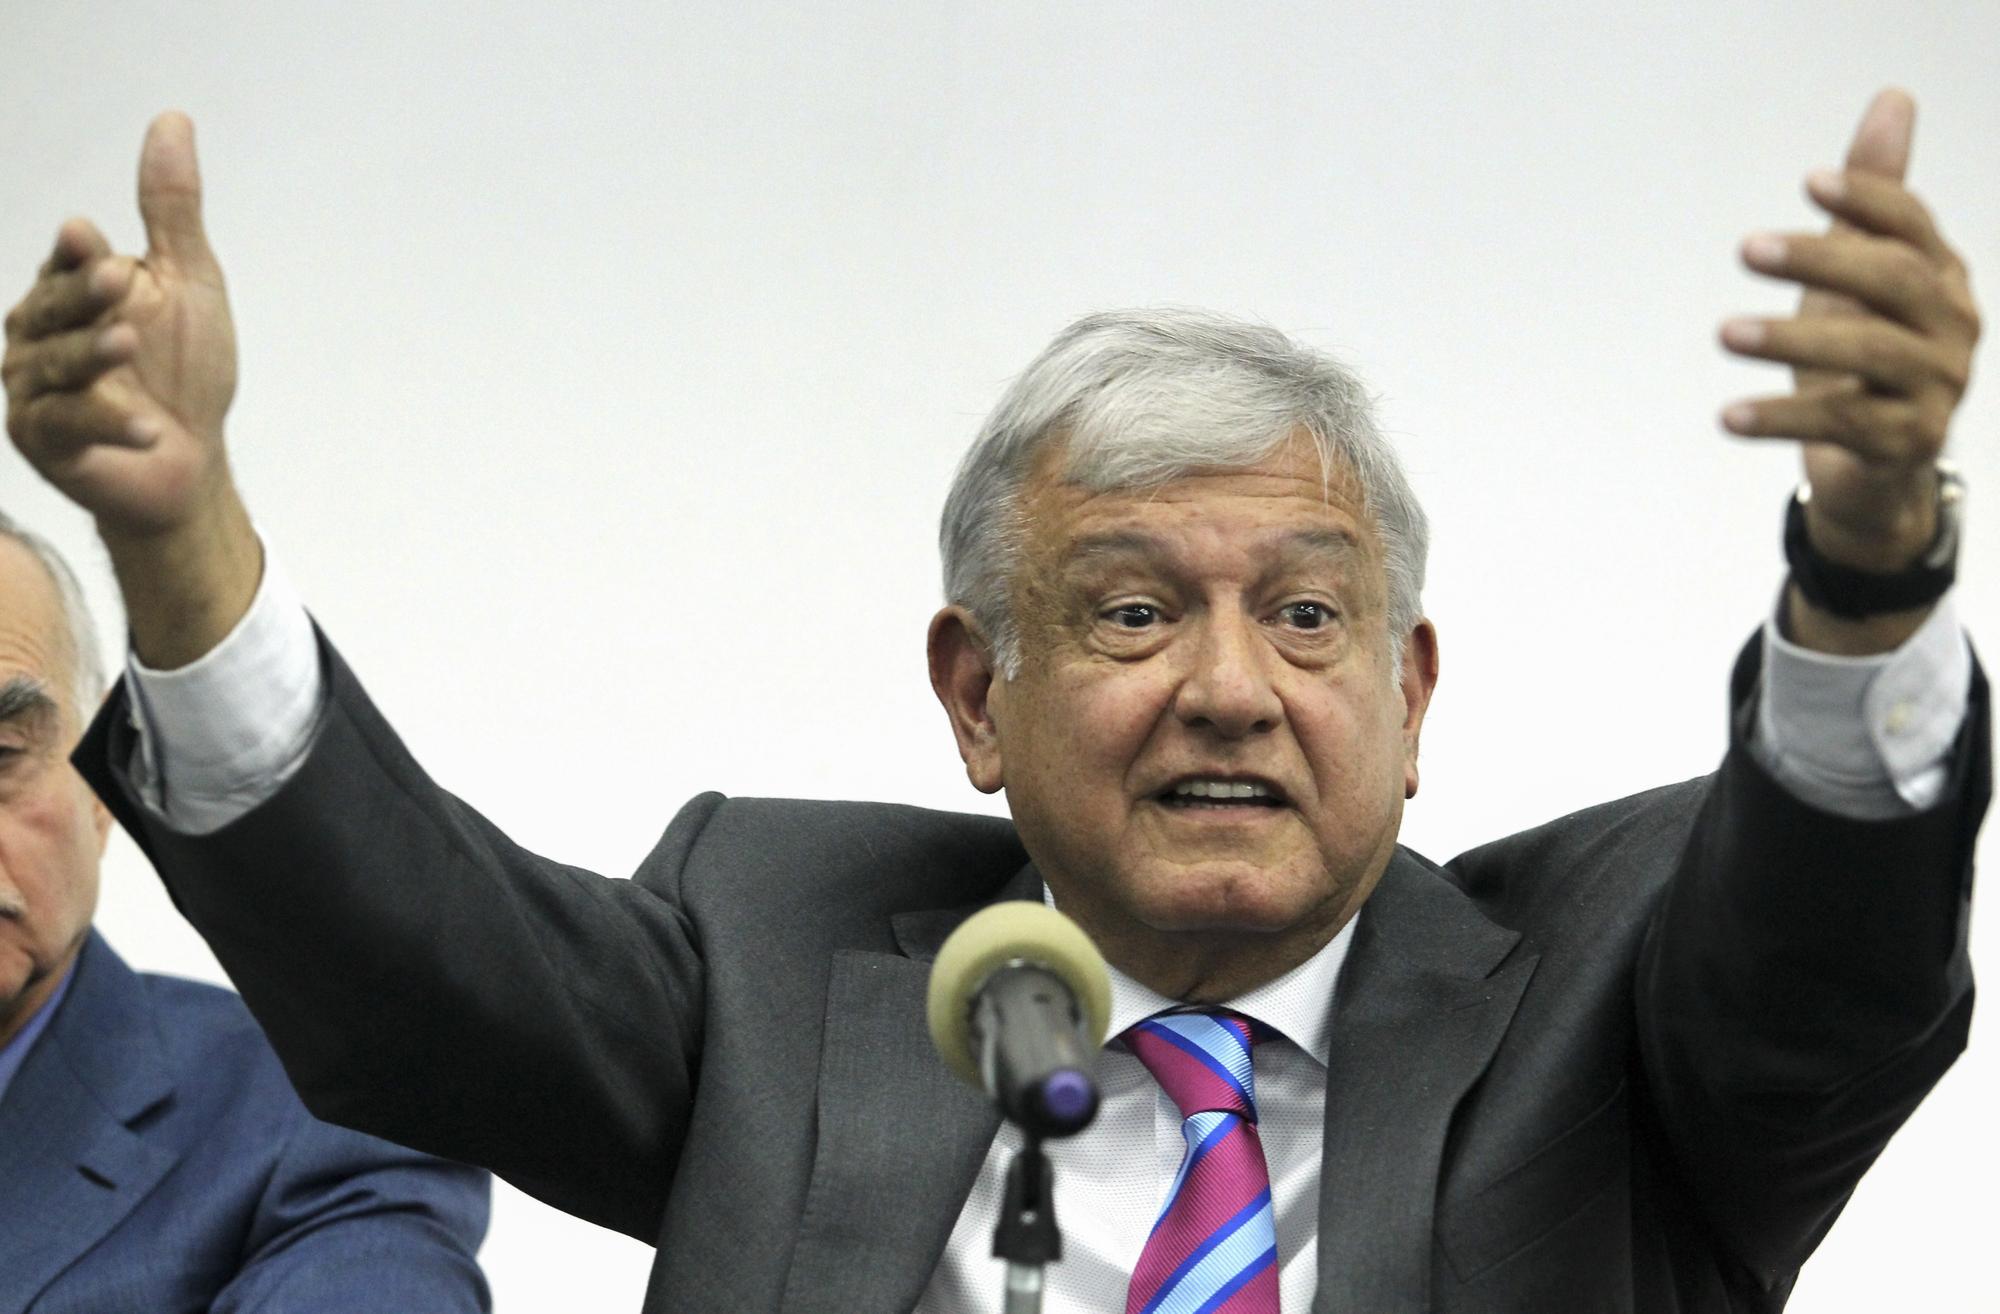 Le président mexicain Manuel López Obrador, photographié ici en octobre 2018 à Mexico City. [AFP - Ulises Ruiz]